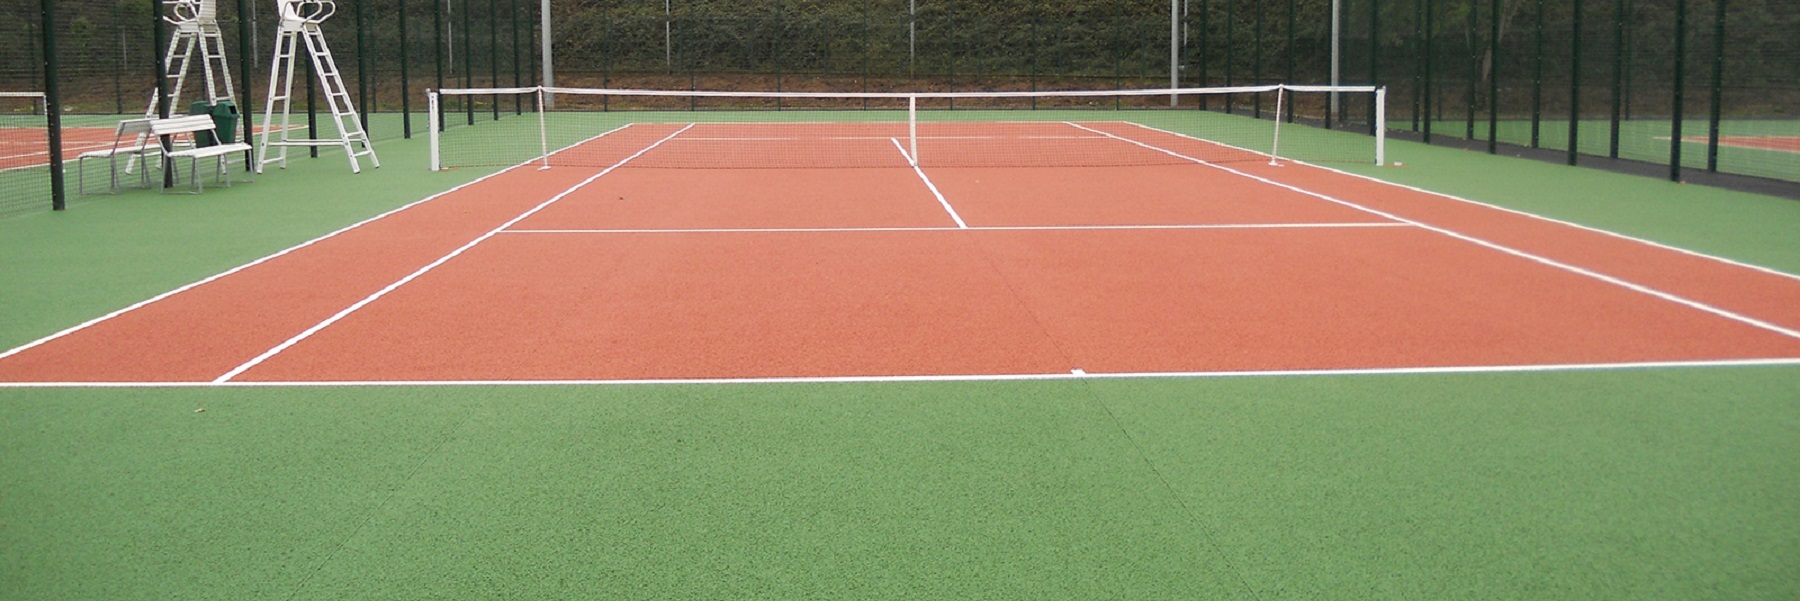 Reparación pistas de tenis pavipor - header